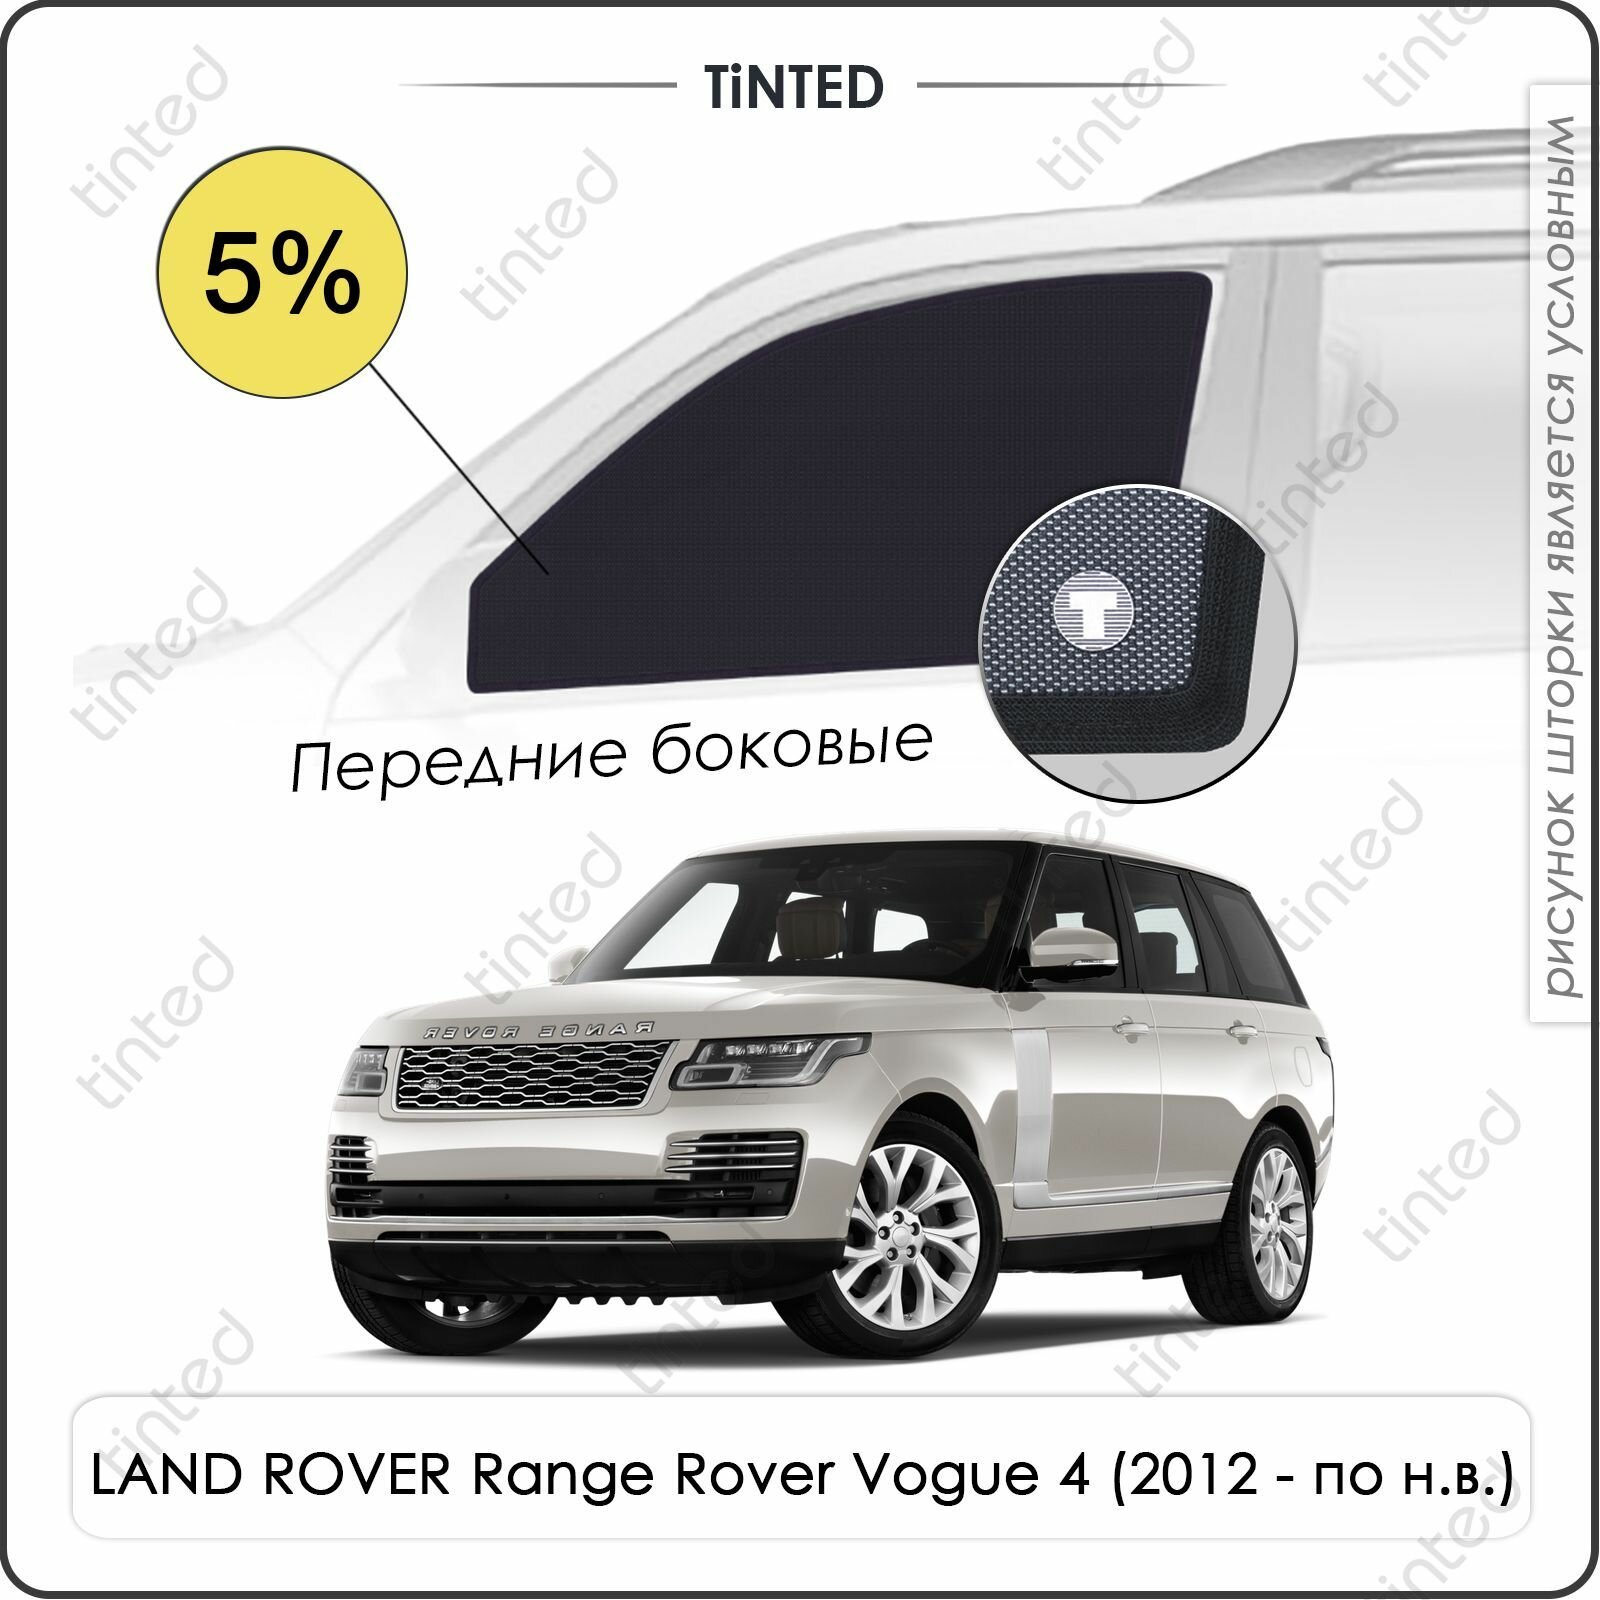 Шторки на автомобиль солнцезащитные LAND ROVER Range Rover Vogue 4 (2012 - по н. в.) на передние двери 5% сетки от солнца в машину ленд ровер рендж ровер ВОГ Каркасные автошторки Premium